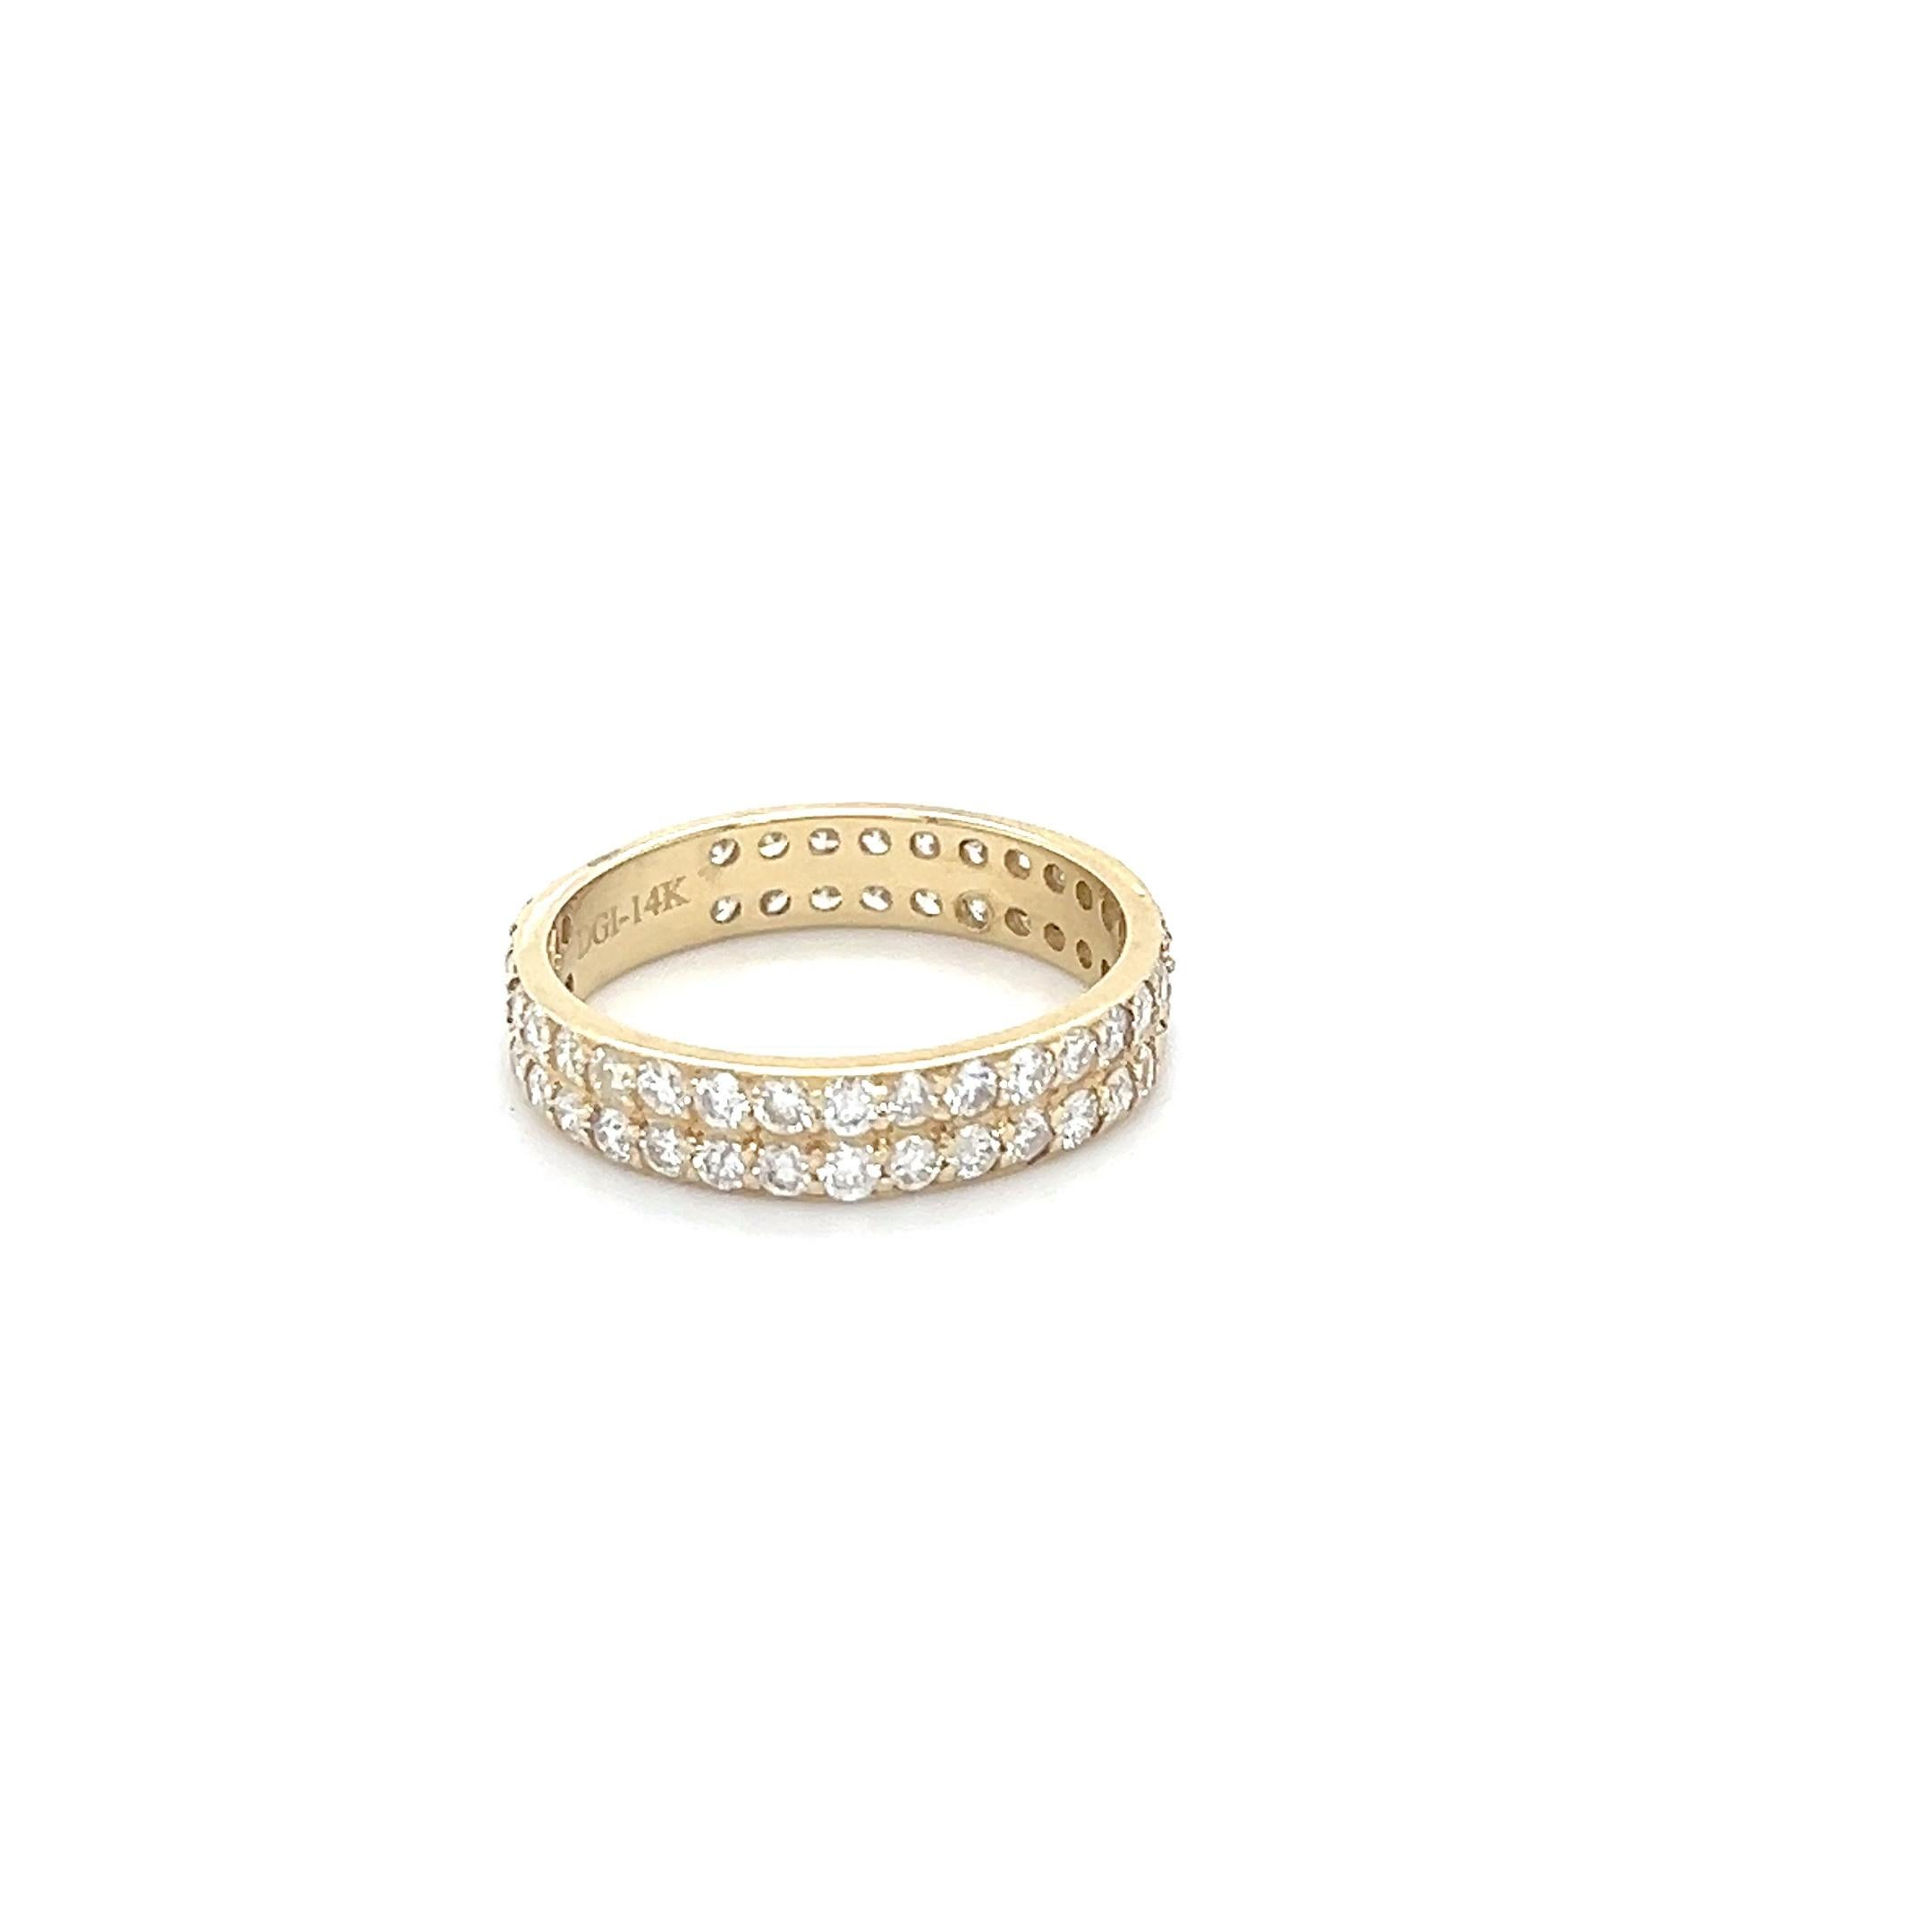 Dieser Ring hat 60 natürliche Diamanten im Rundschliff mit einem Gewicht von 1,48 Karat (Reinheit: VS, Farbe: H) 
Er hat ein Goldgewicht von etwa 3,0 Gramm und ist in 14 Karat Gelbgold gefasst.

Der Ring hat die Größe 7 und kann kostenlos in der